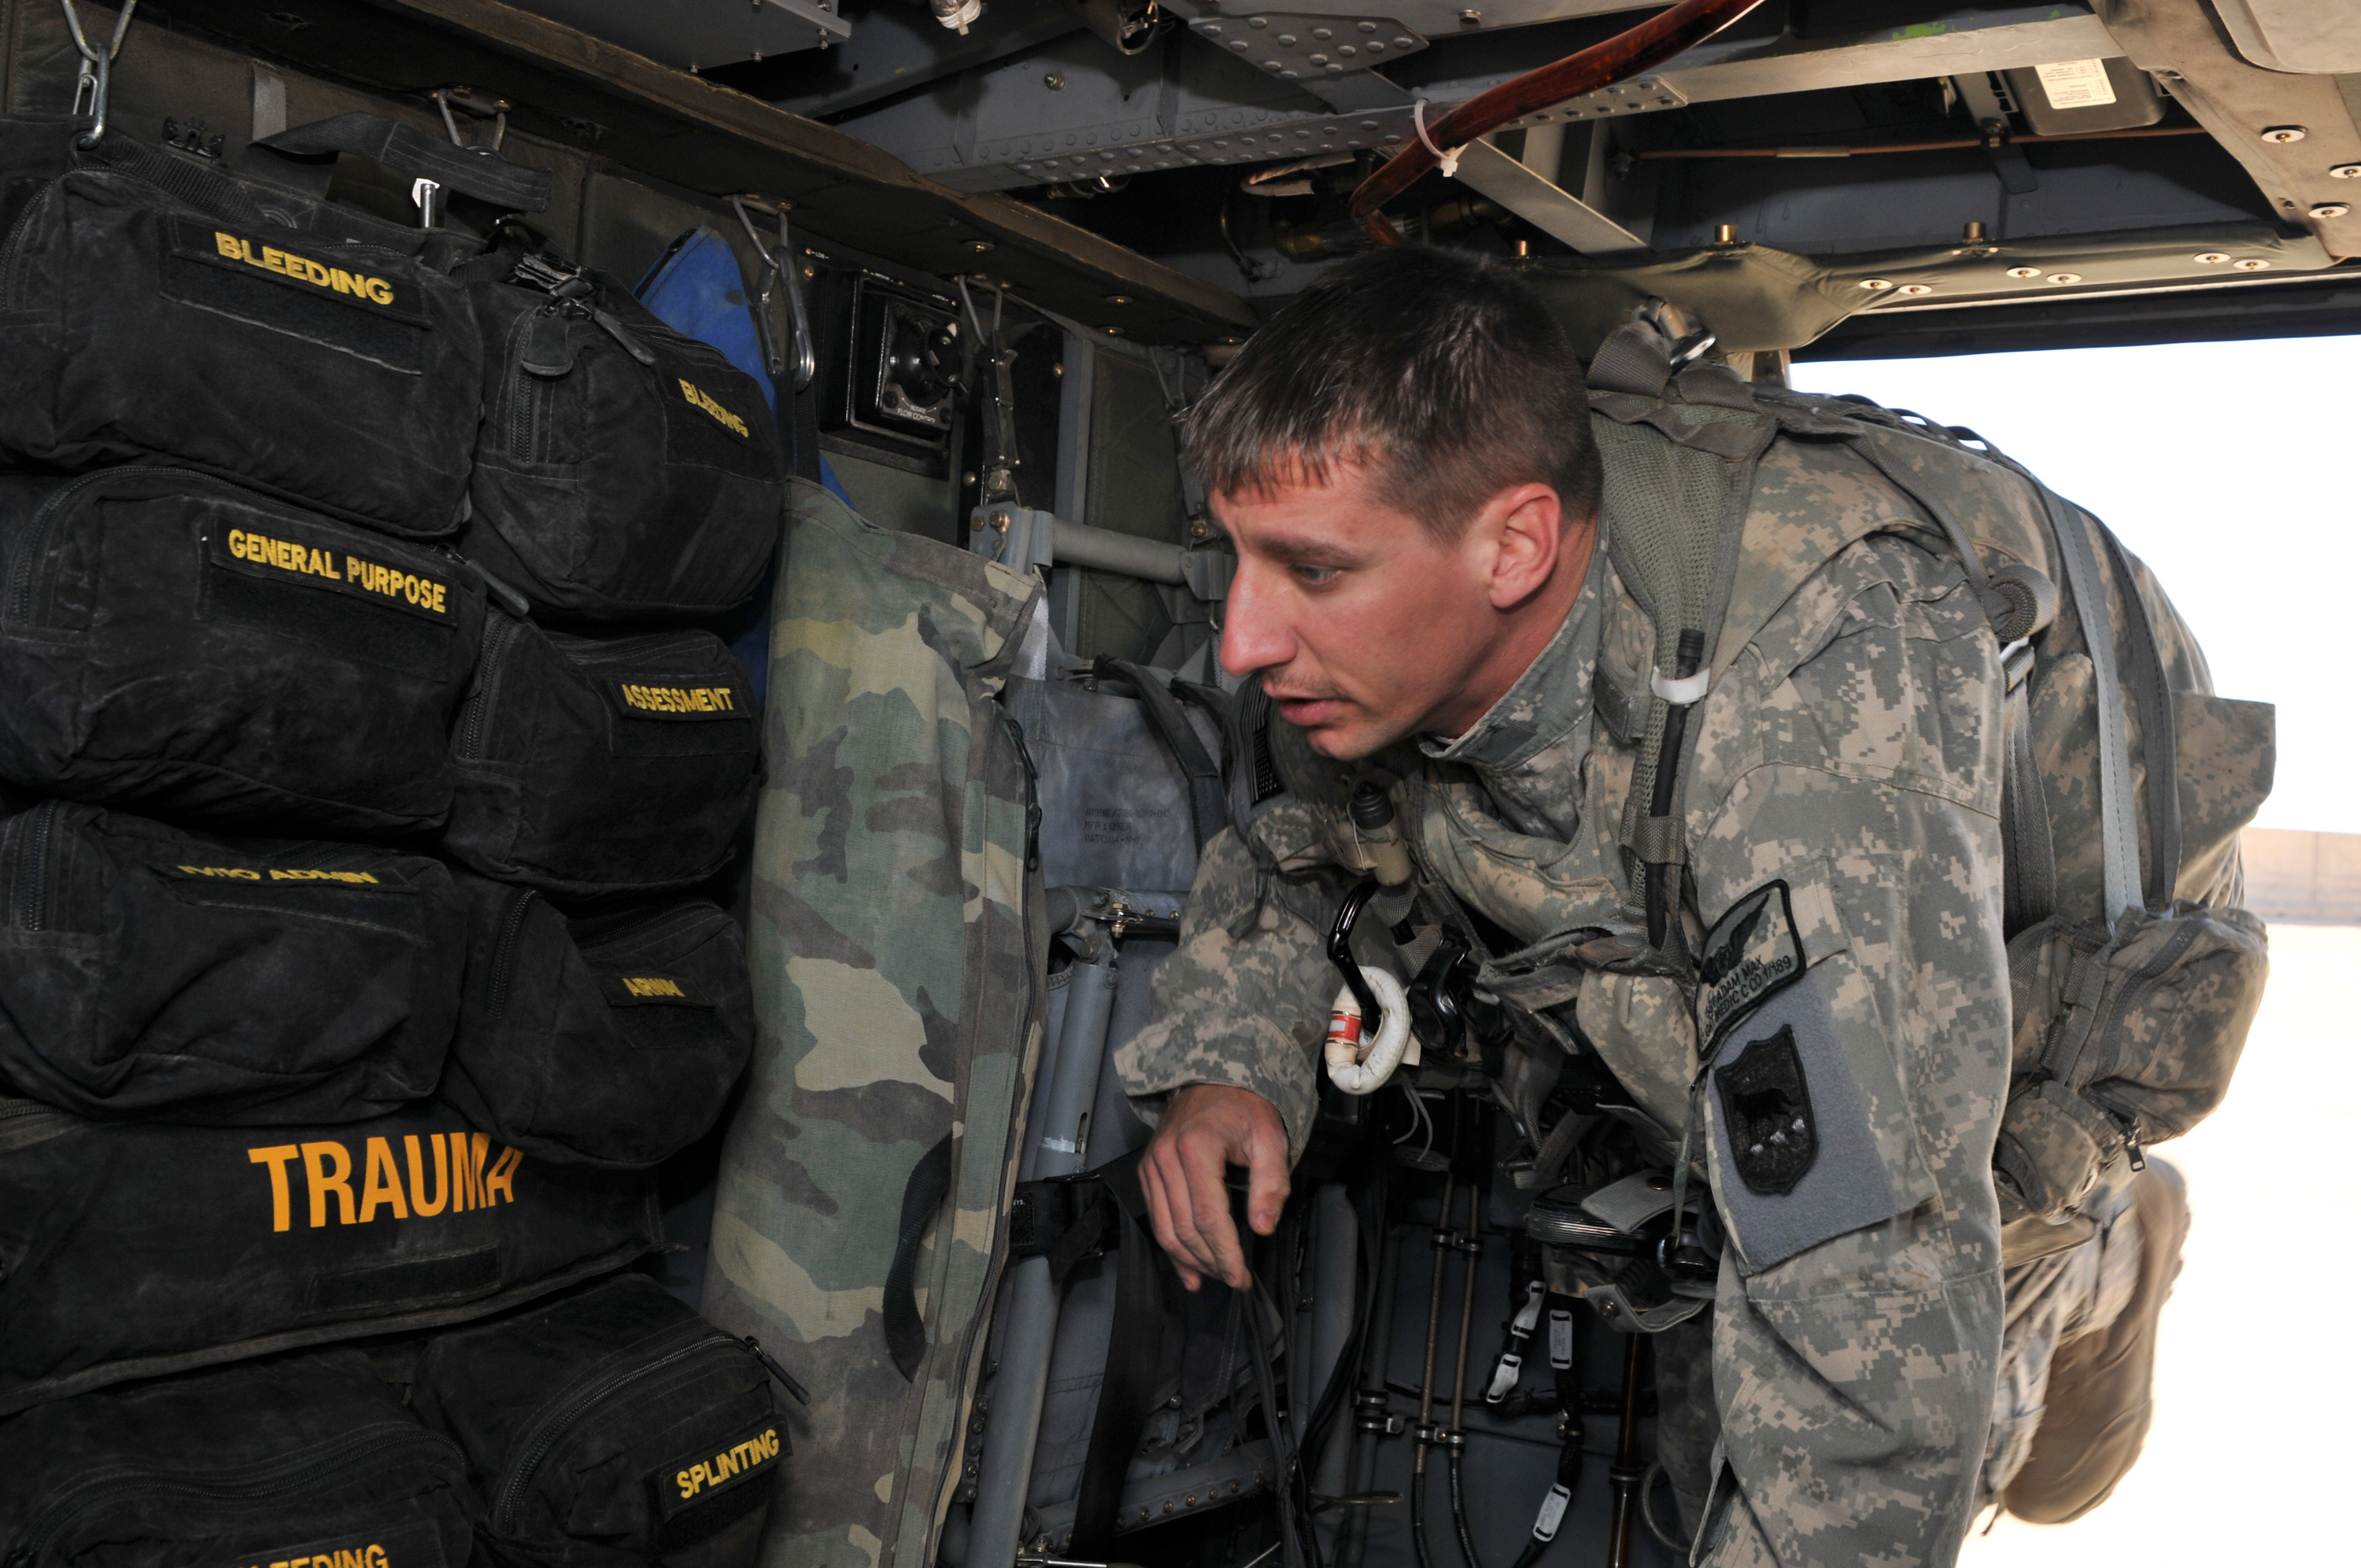 DVIDS - Images - New Jersey National Guard MEDEVAC pilot [Image 3